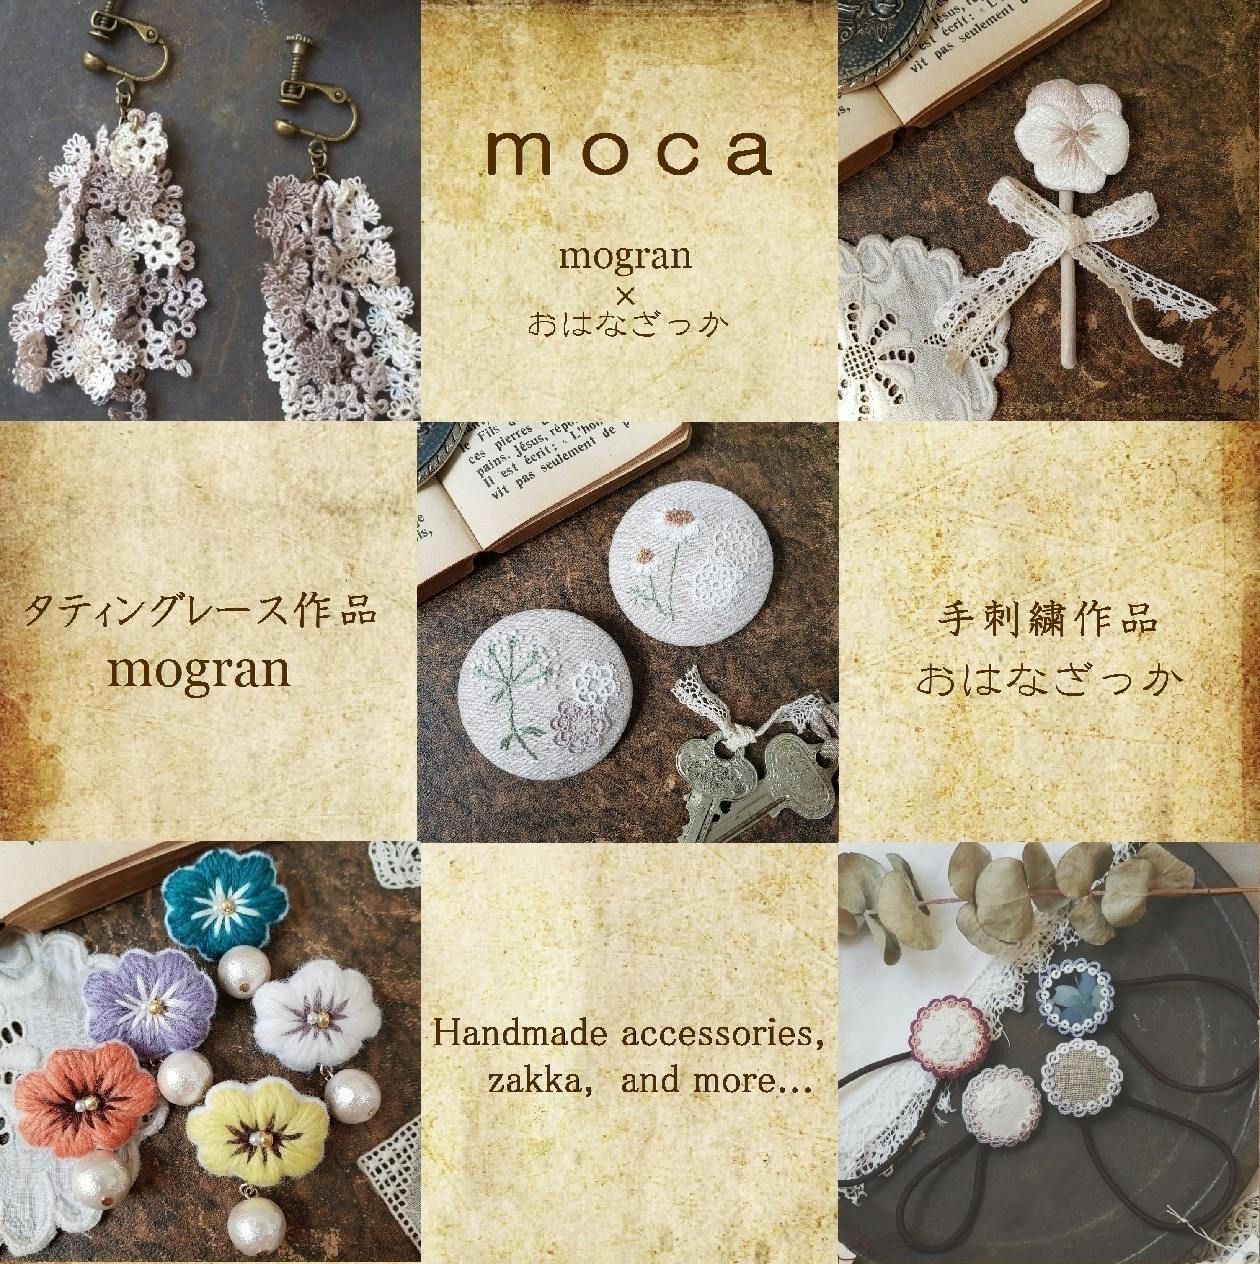 目標→高円寺で愛されるステキな手仕事のお店！「moca」をぜひ応援して下さい！ CAMPFIRE (キャンプファイヤー)